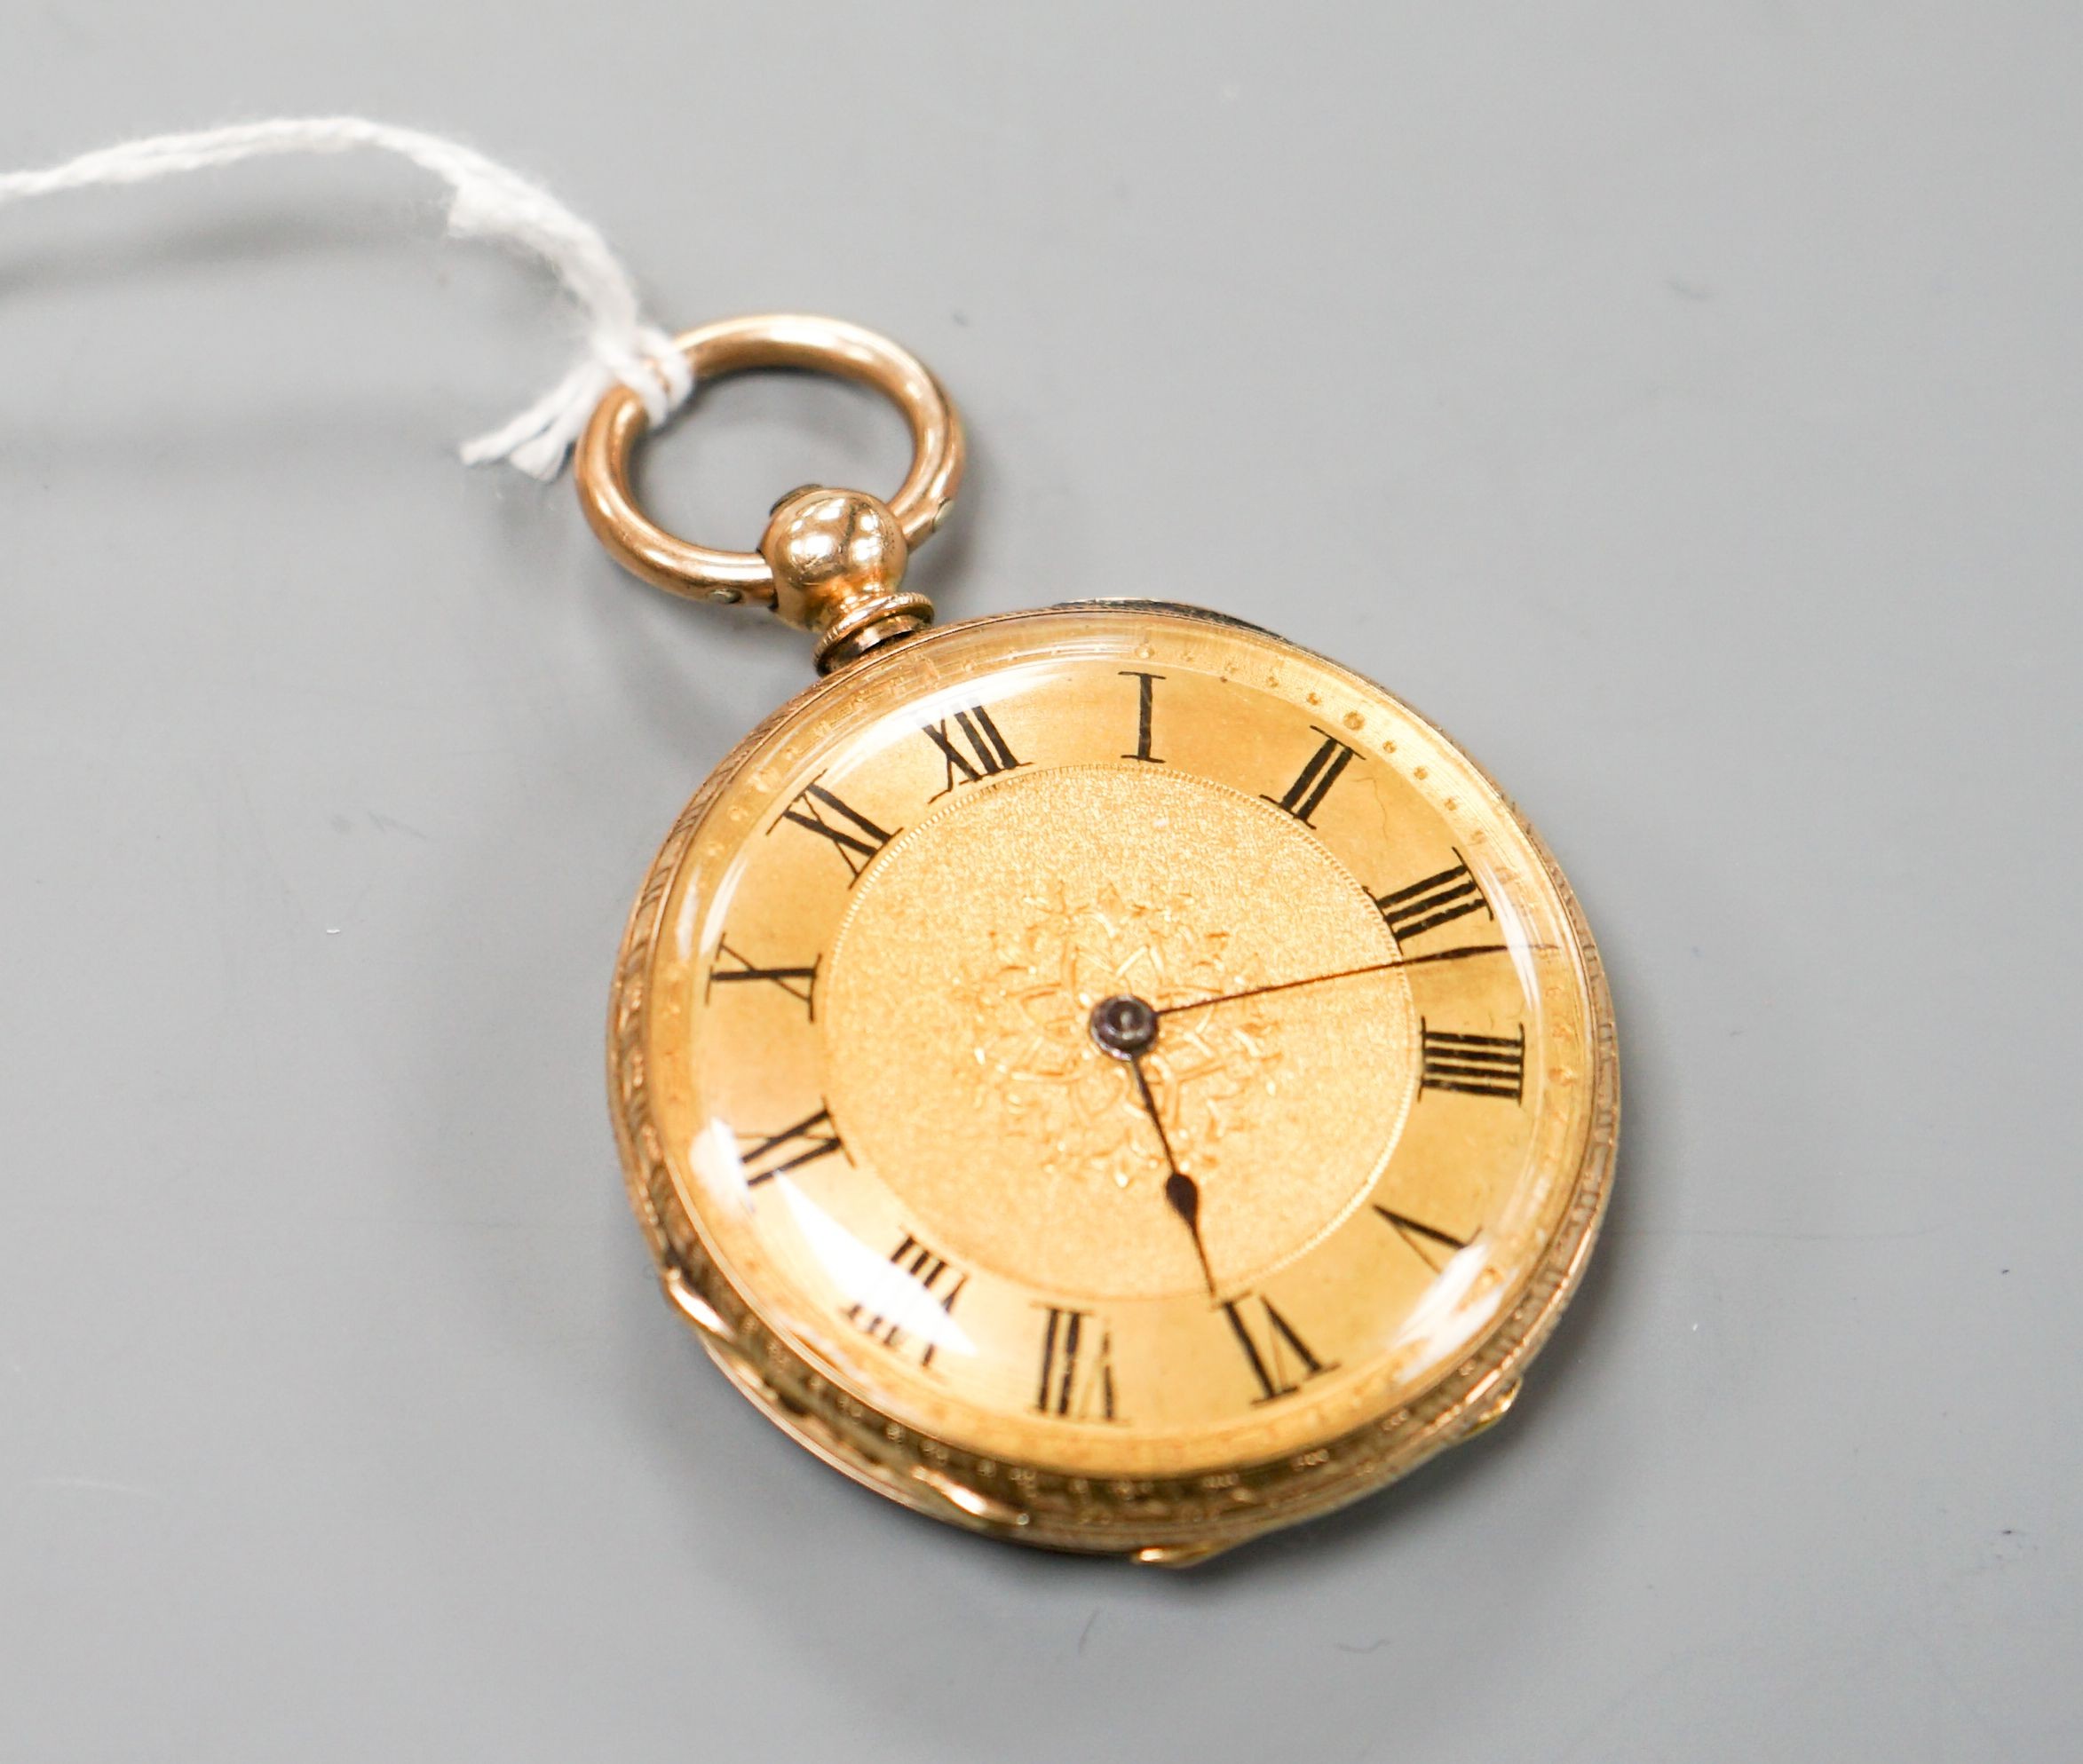 An engraved 14k open face keywind fob watch, case diameter 40mm, gross weight 51.4 grams.